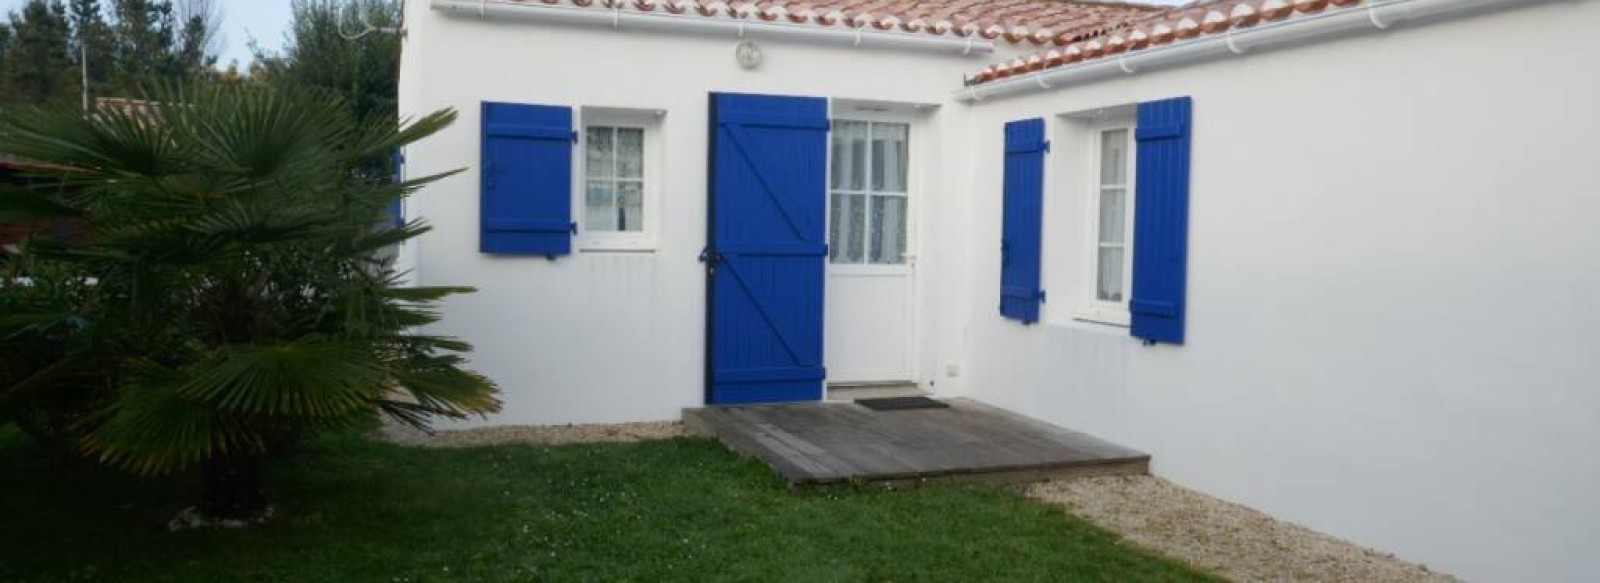 Maison de vacances proche de la plage du Midi a Barbatre sur l'ile de Noirmoutier